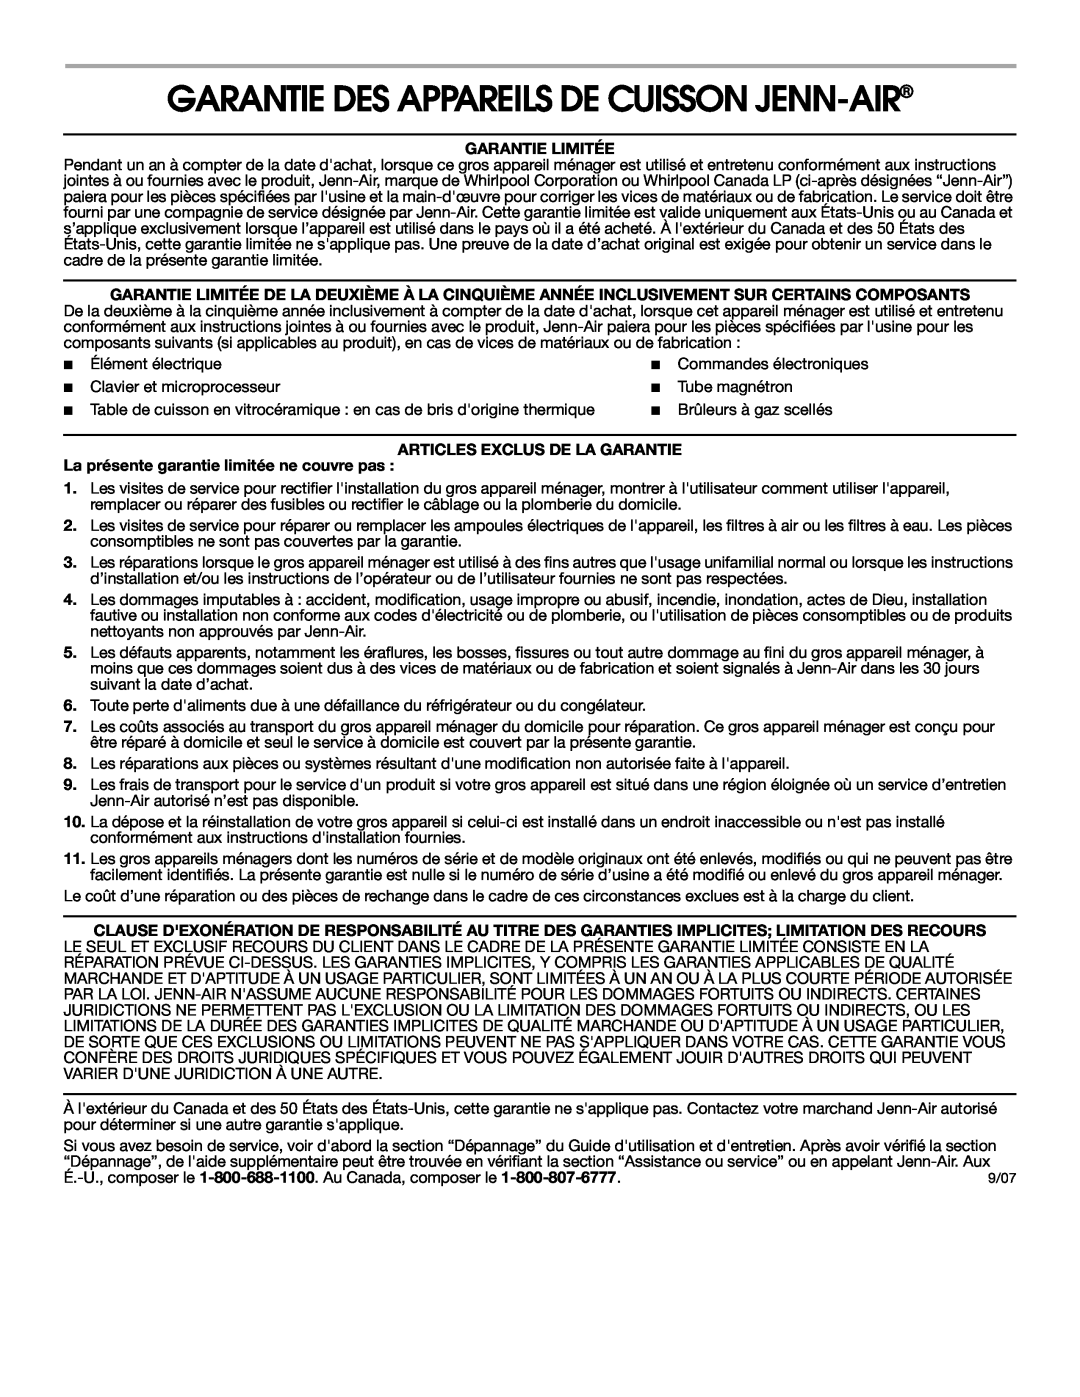 Jenn-Air Cooktop Garantie Des Appareils De Cuisson Jenn-Air, Garantie Limitée, Articles Exclus De La Garantie 